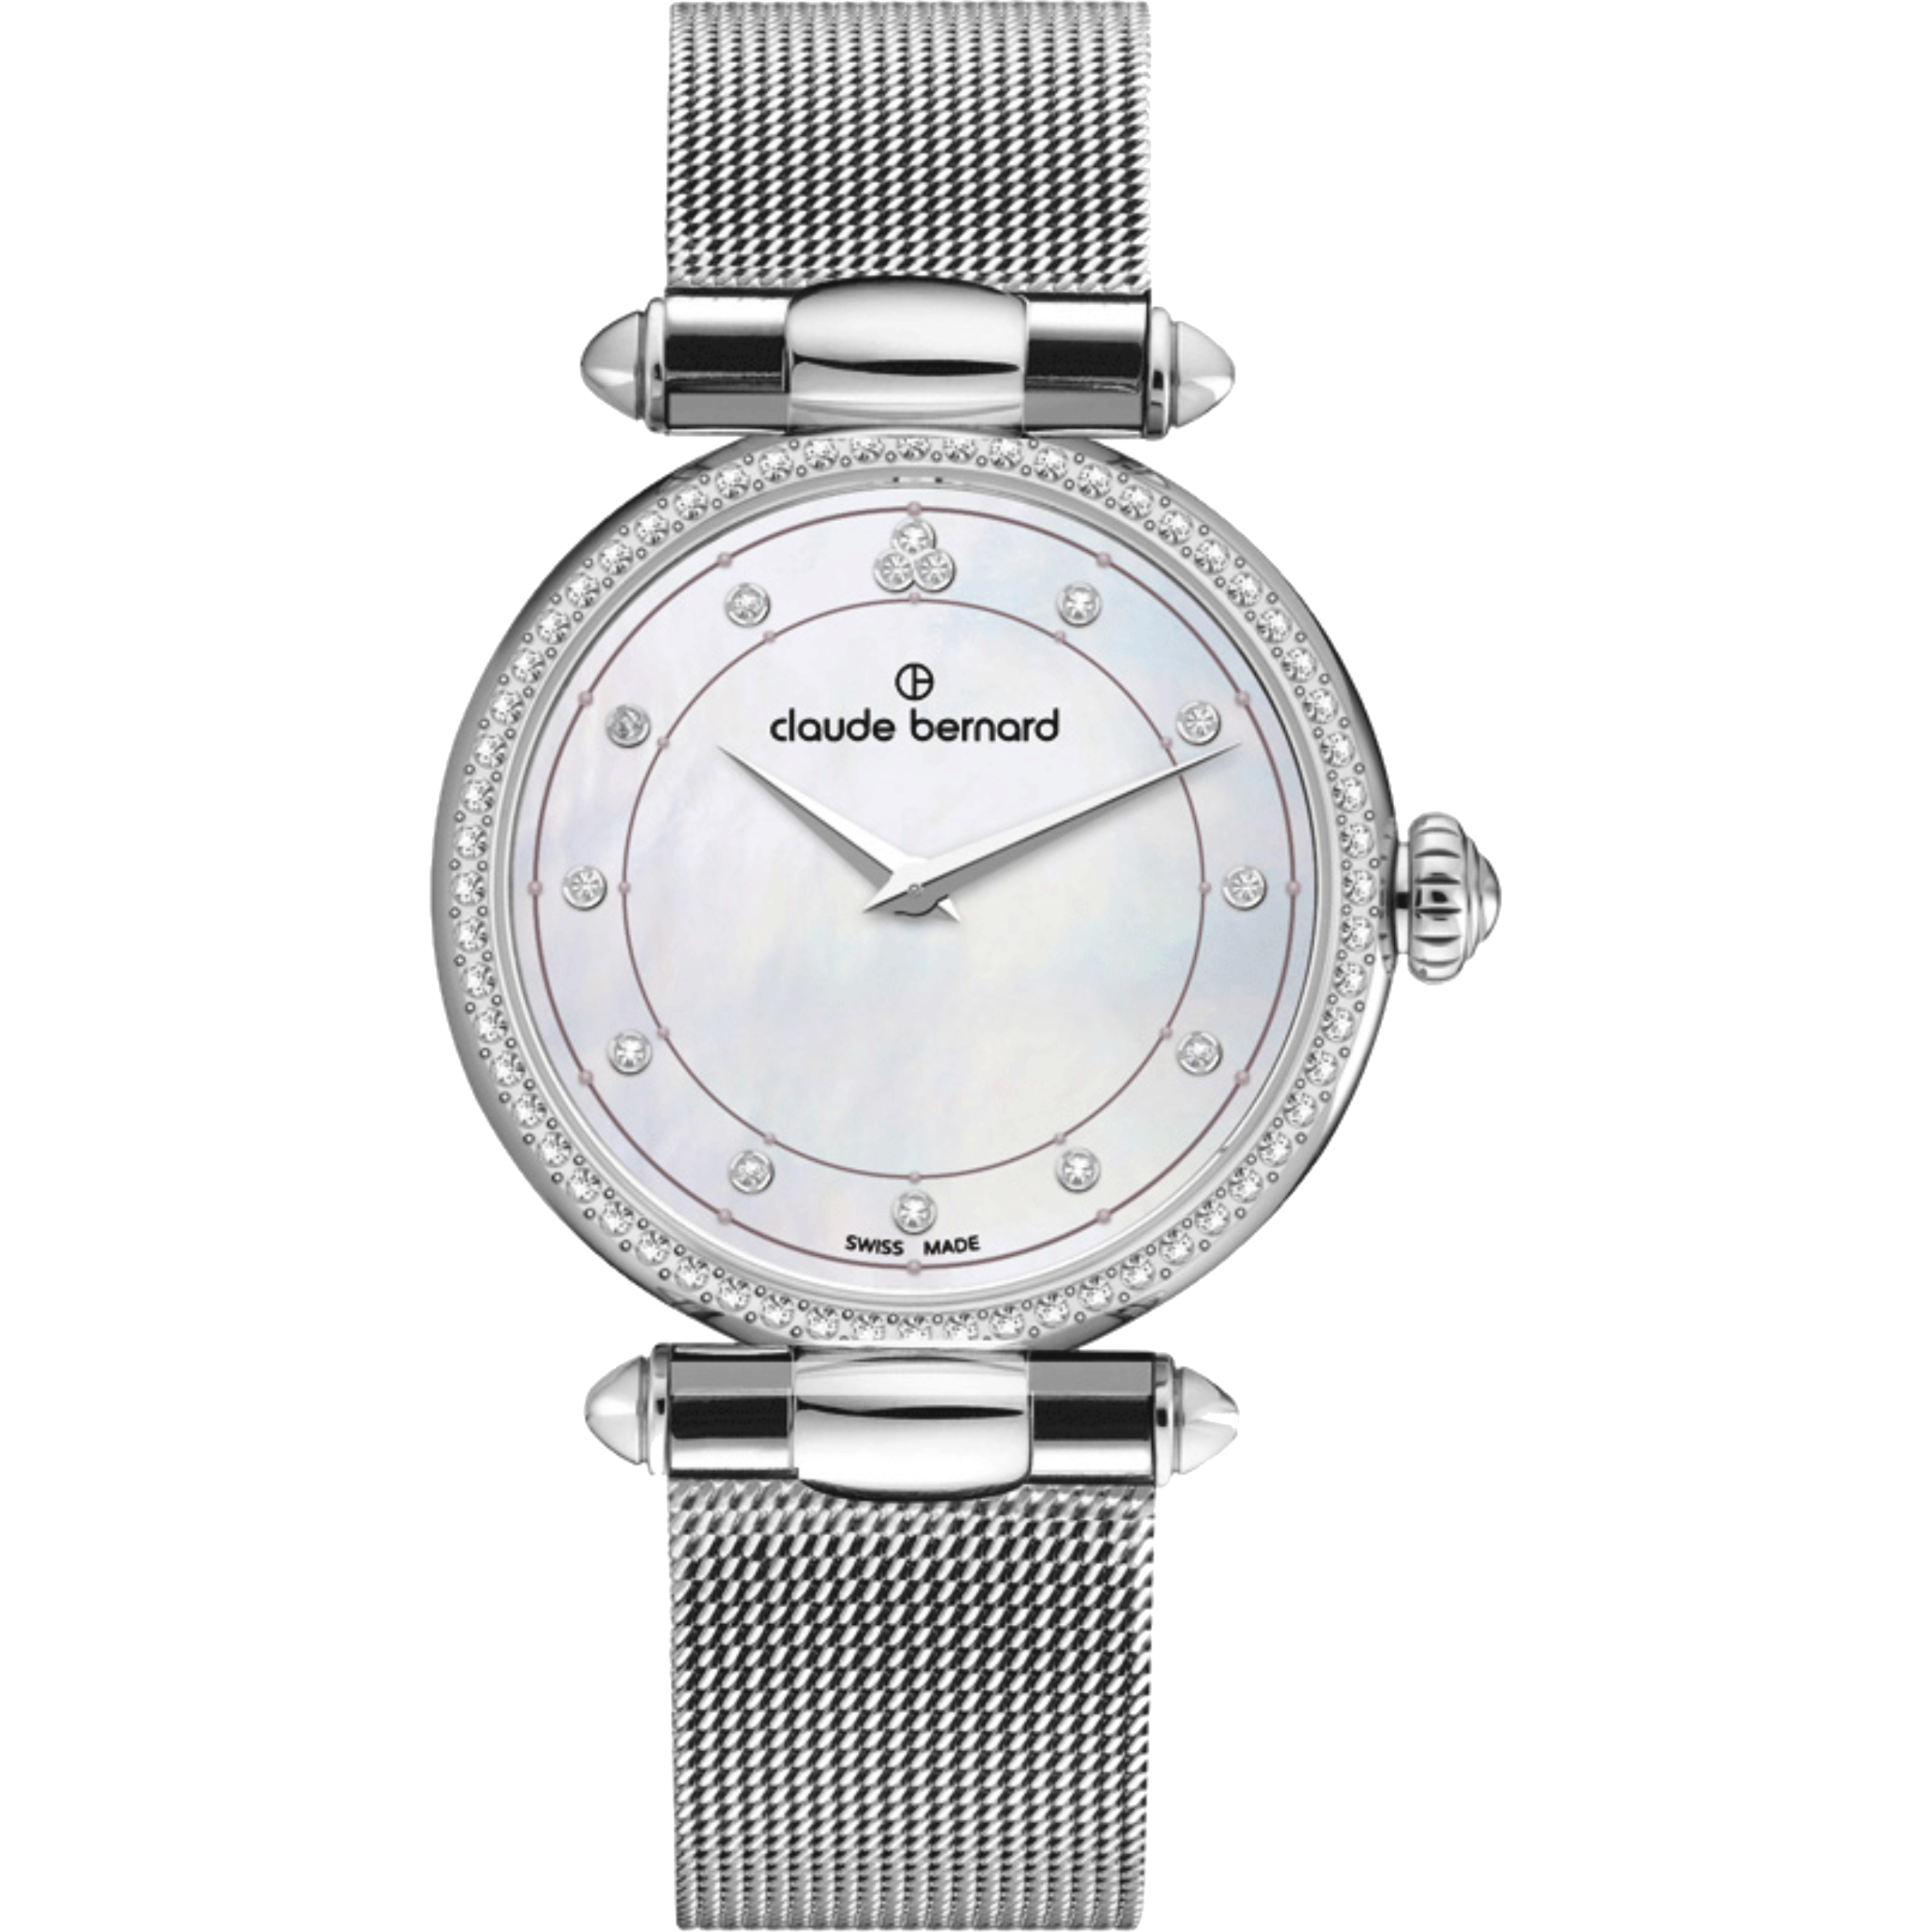 שעון יד לאישה Claude Bernard 20509 3M NAN 34mm צבע כסף/ספיר קריסטל - אחריות לשנה ע"י היבואן